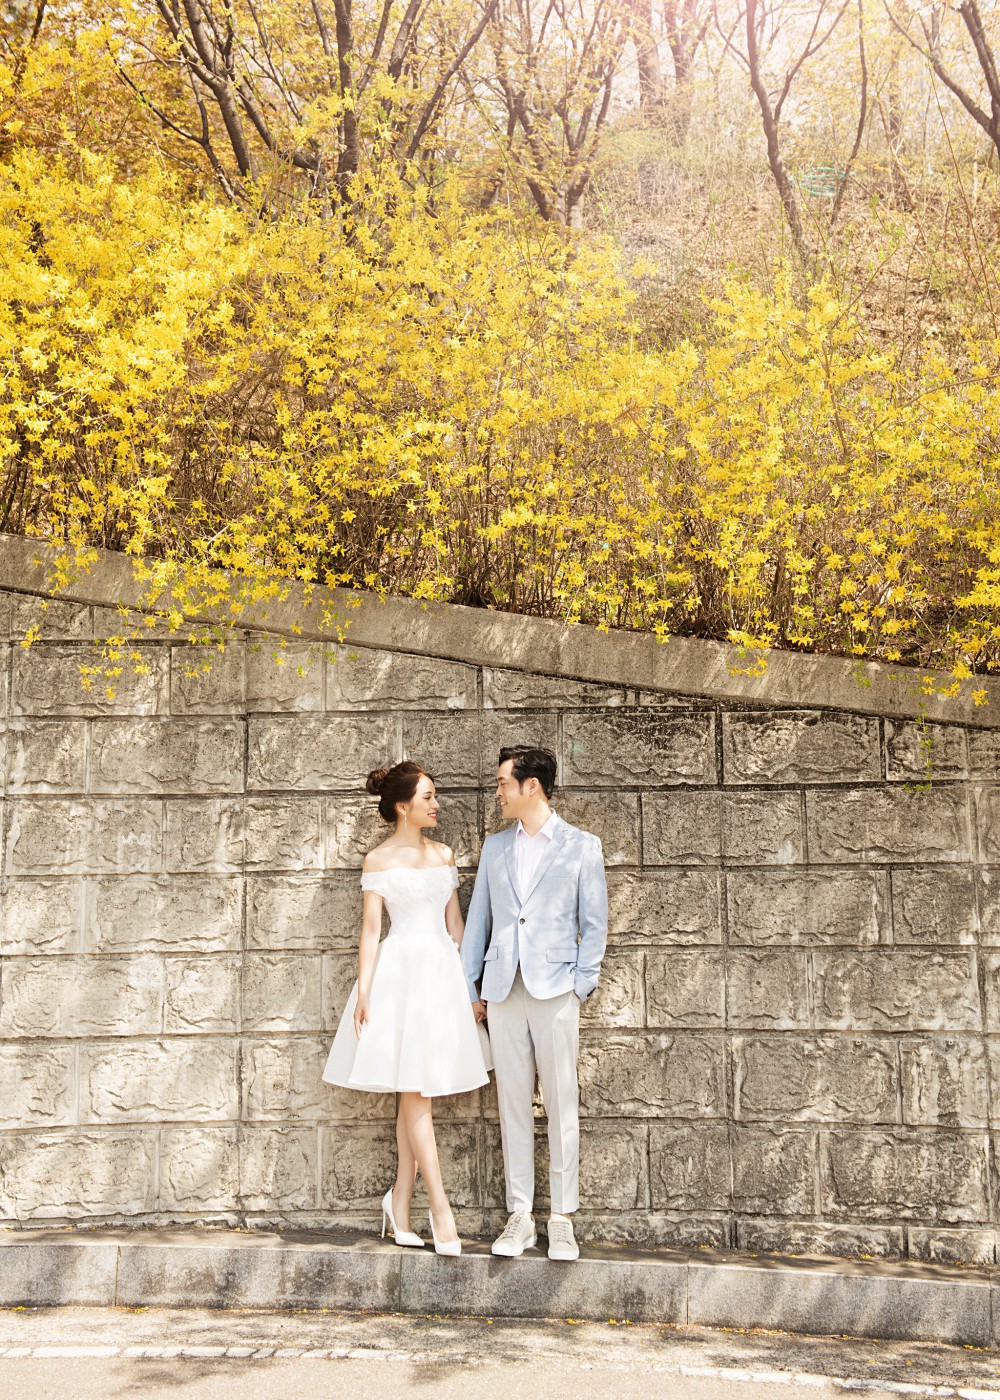 Ảnh cưới đẹp như phim chụp tại Hàn Quốc của Dương Khắc Linh và vợ trẻ kém 13 tuổi-11